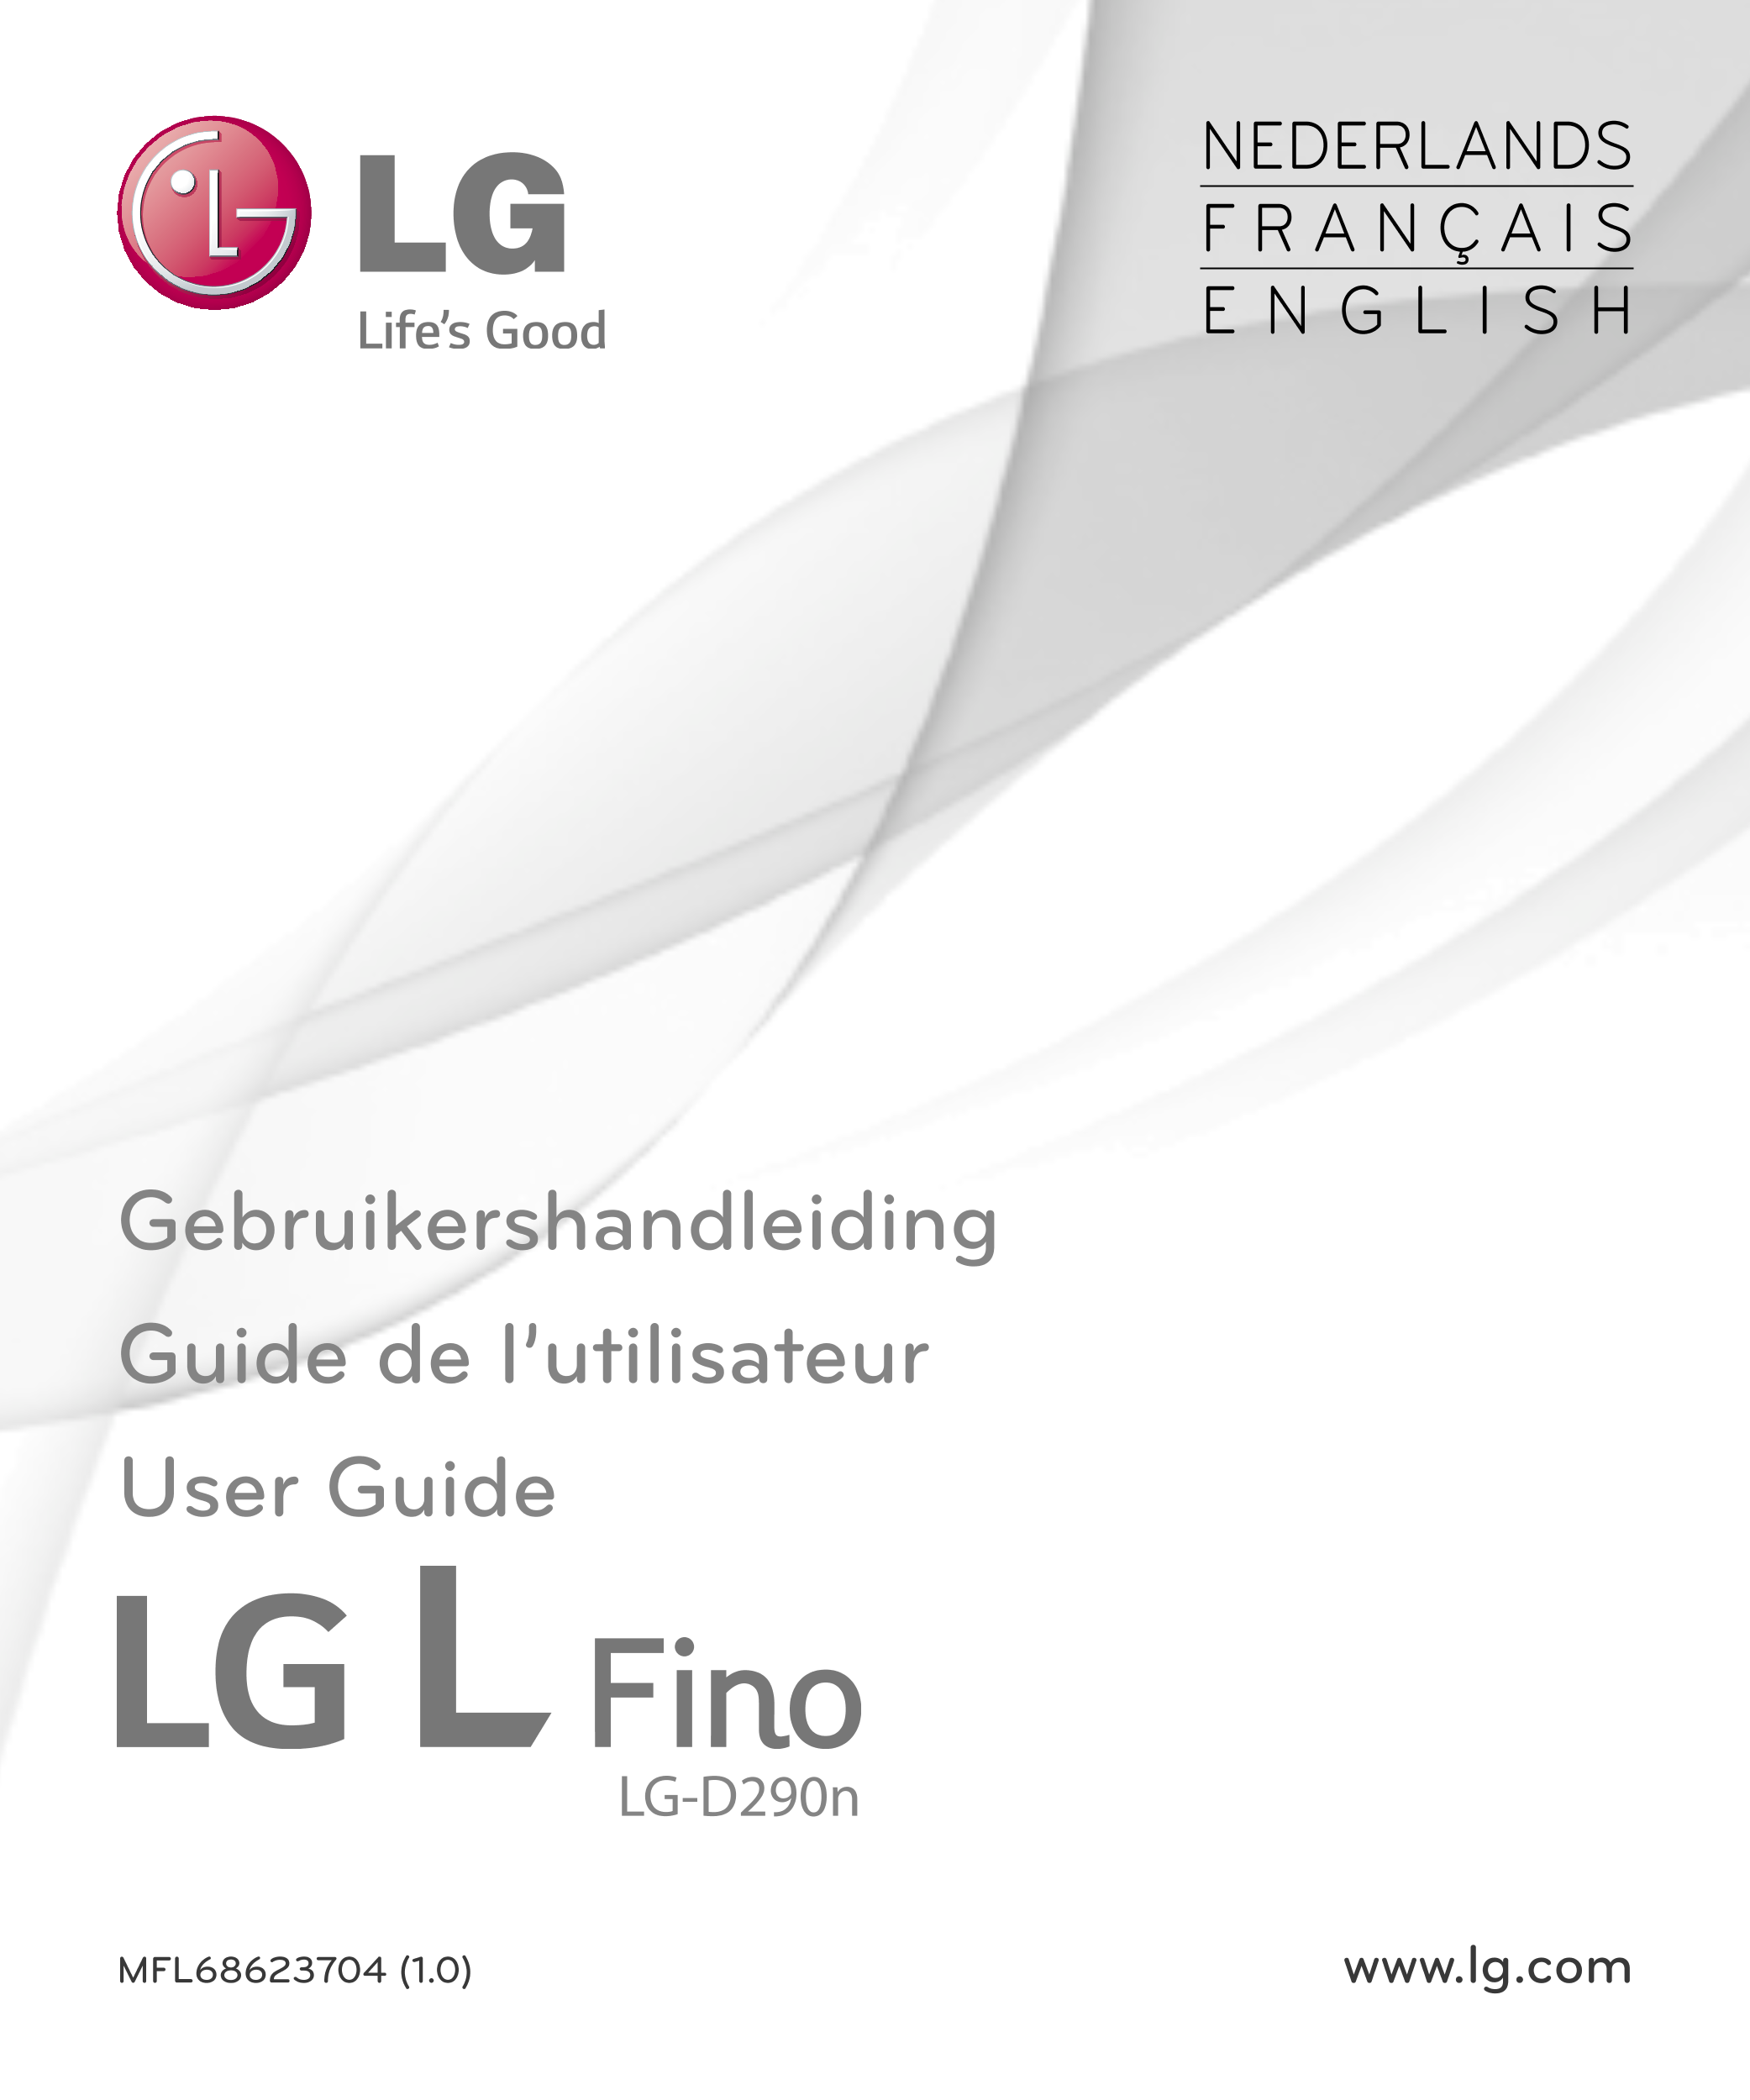 NEDERLANDS
F R A N Ç A I S
E N G L I S H
Gebruikershandleiding
Guide de l’utilisateur
User Guide
LG-D290n
MFL68623704 (1.0) www.